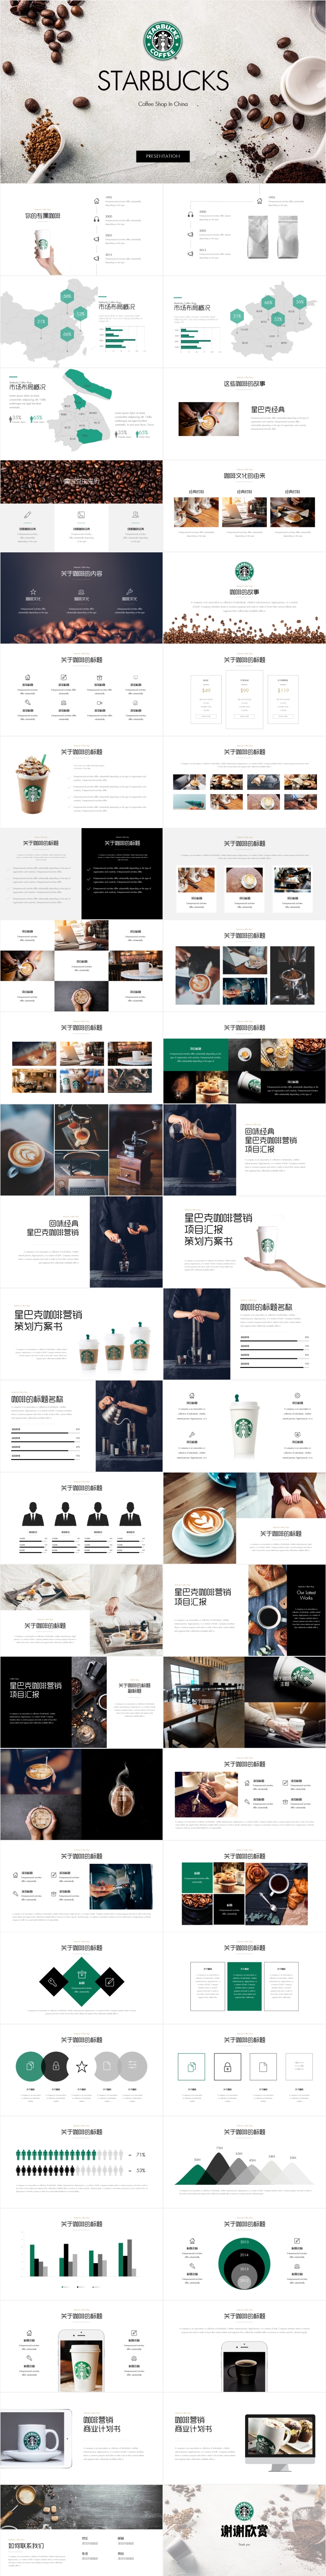 星巴克咖啡融资市场调研报告keynote模版